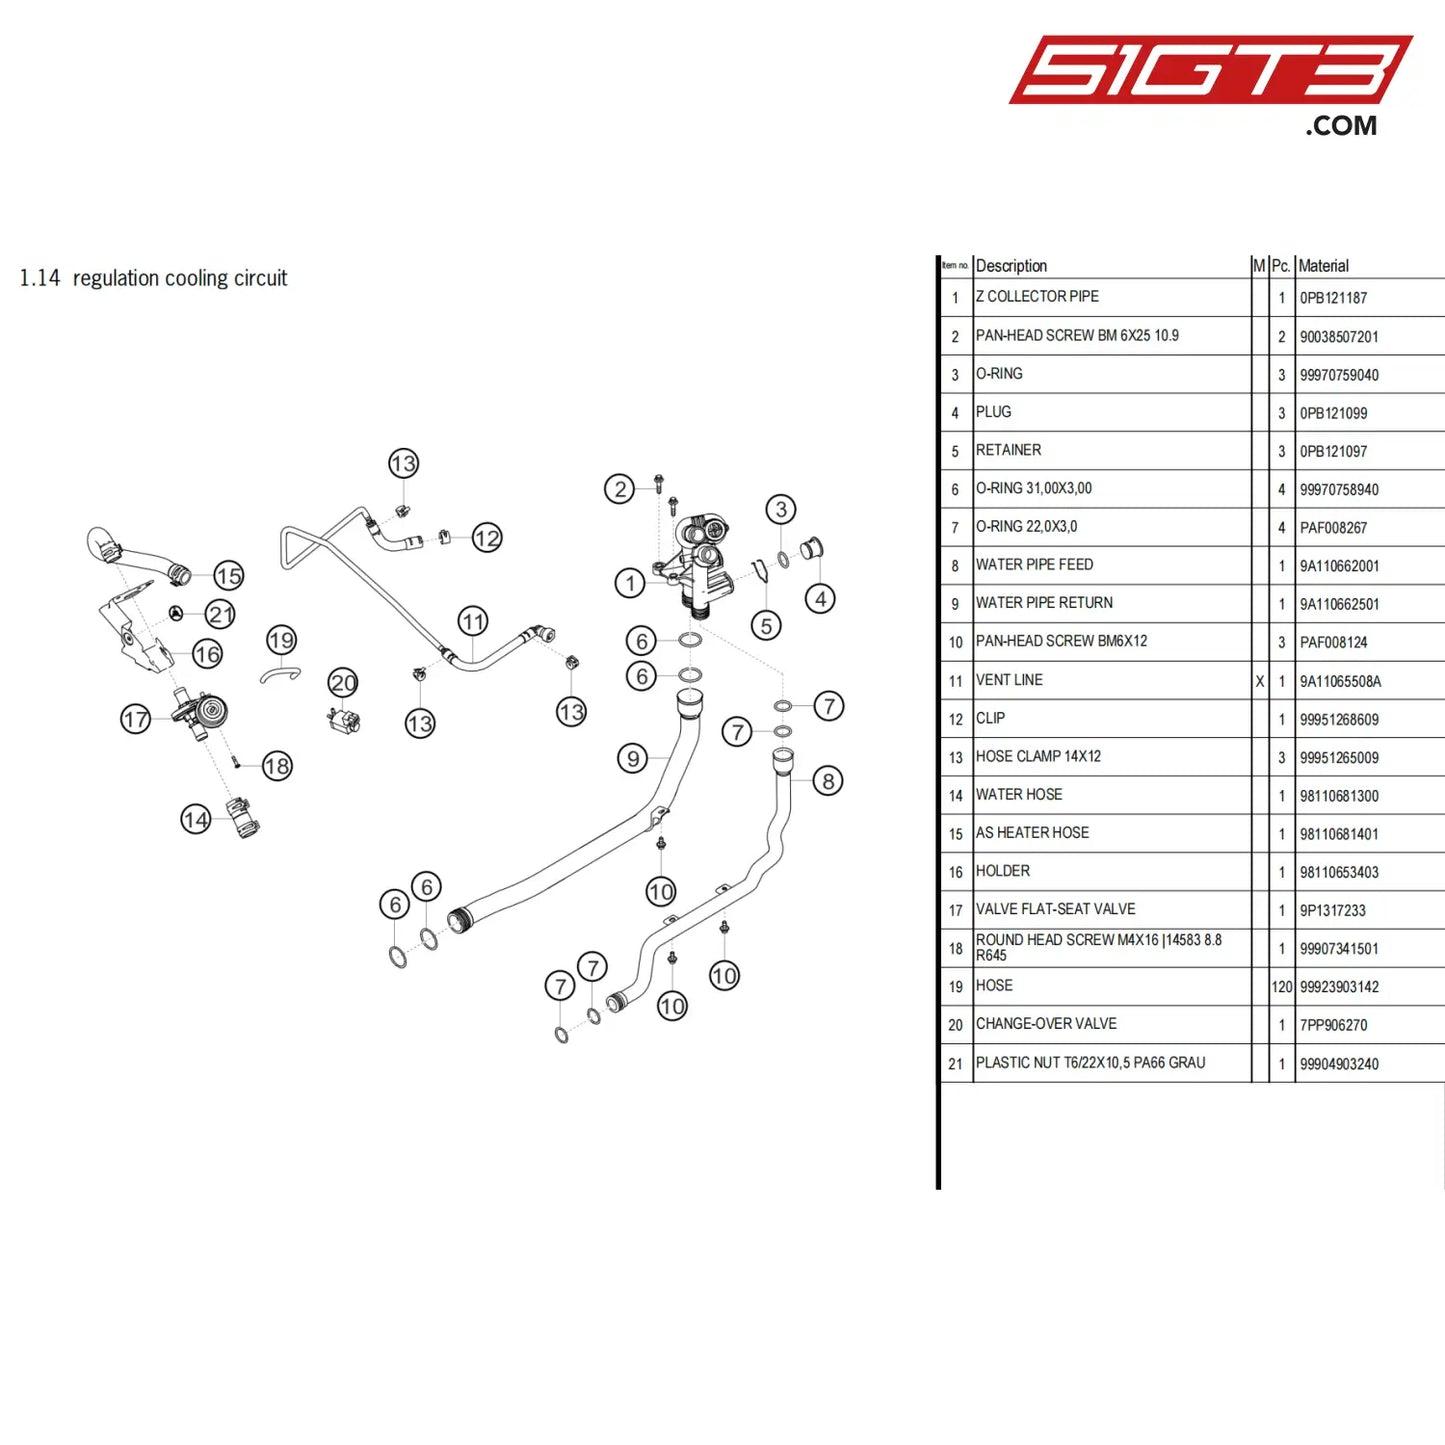 Vent Line - 9A11065508A [Porsche 718 Cayman Gt4 Clubsport] Regulation Cooling Circuit